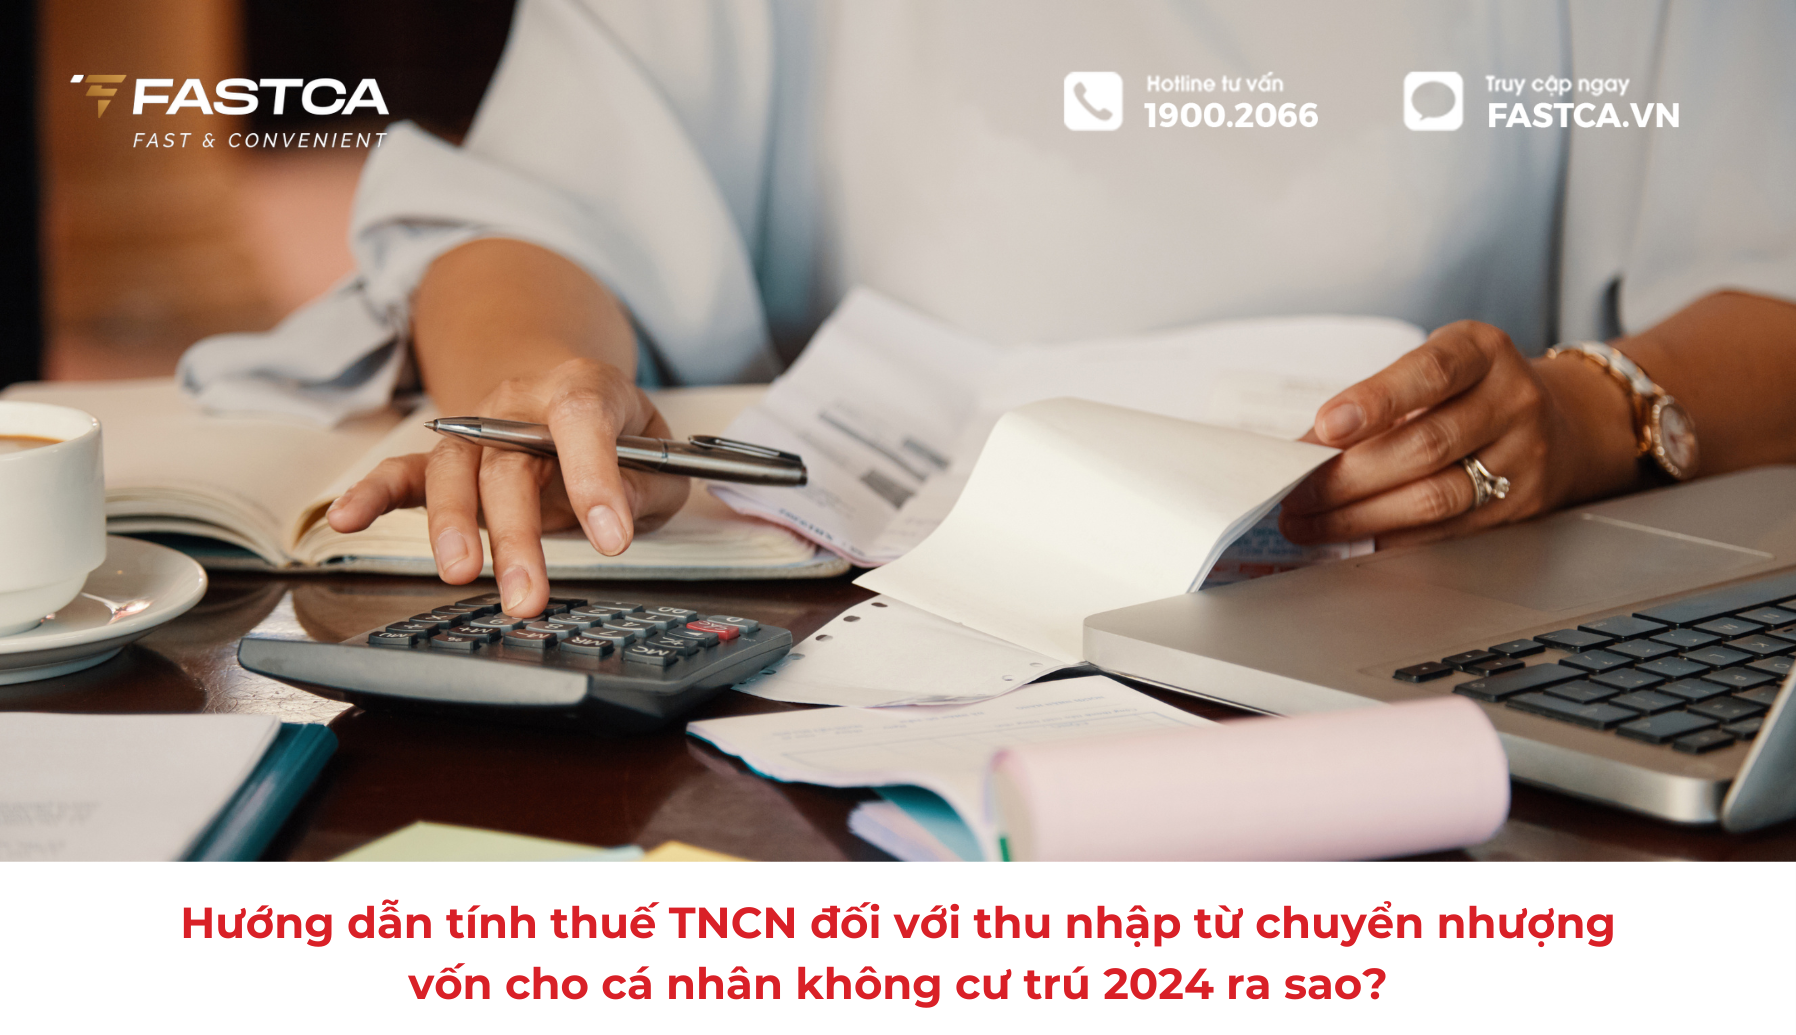 Hướng dẫn tính thuế TNCN đối với thu nhập từ chuyển nhượng vốn cho cá nhân không cư trú 2024 ra sao?